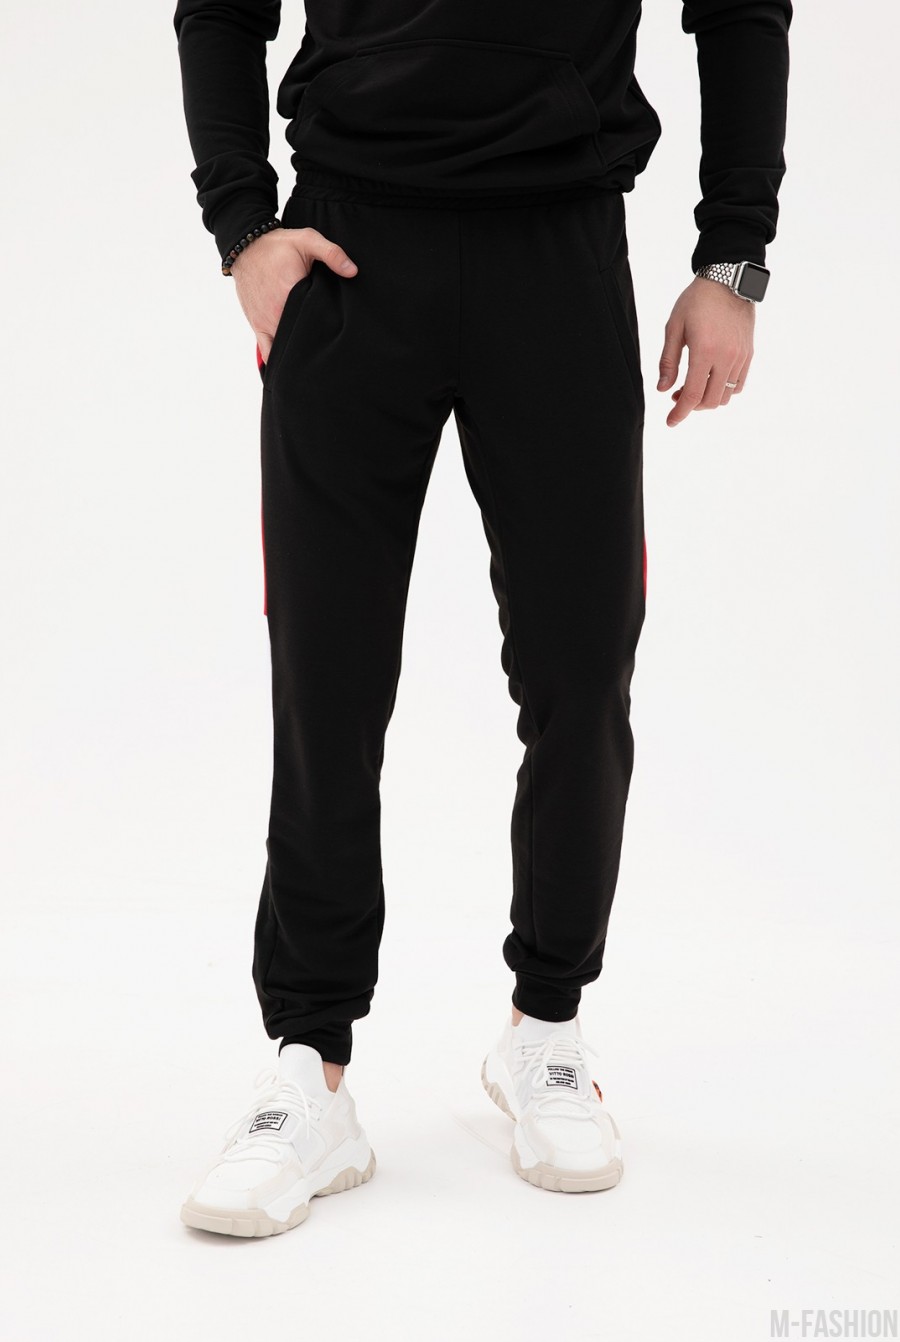 Черные трикотажные штаны с цветными вставками - Фото 1